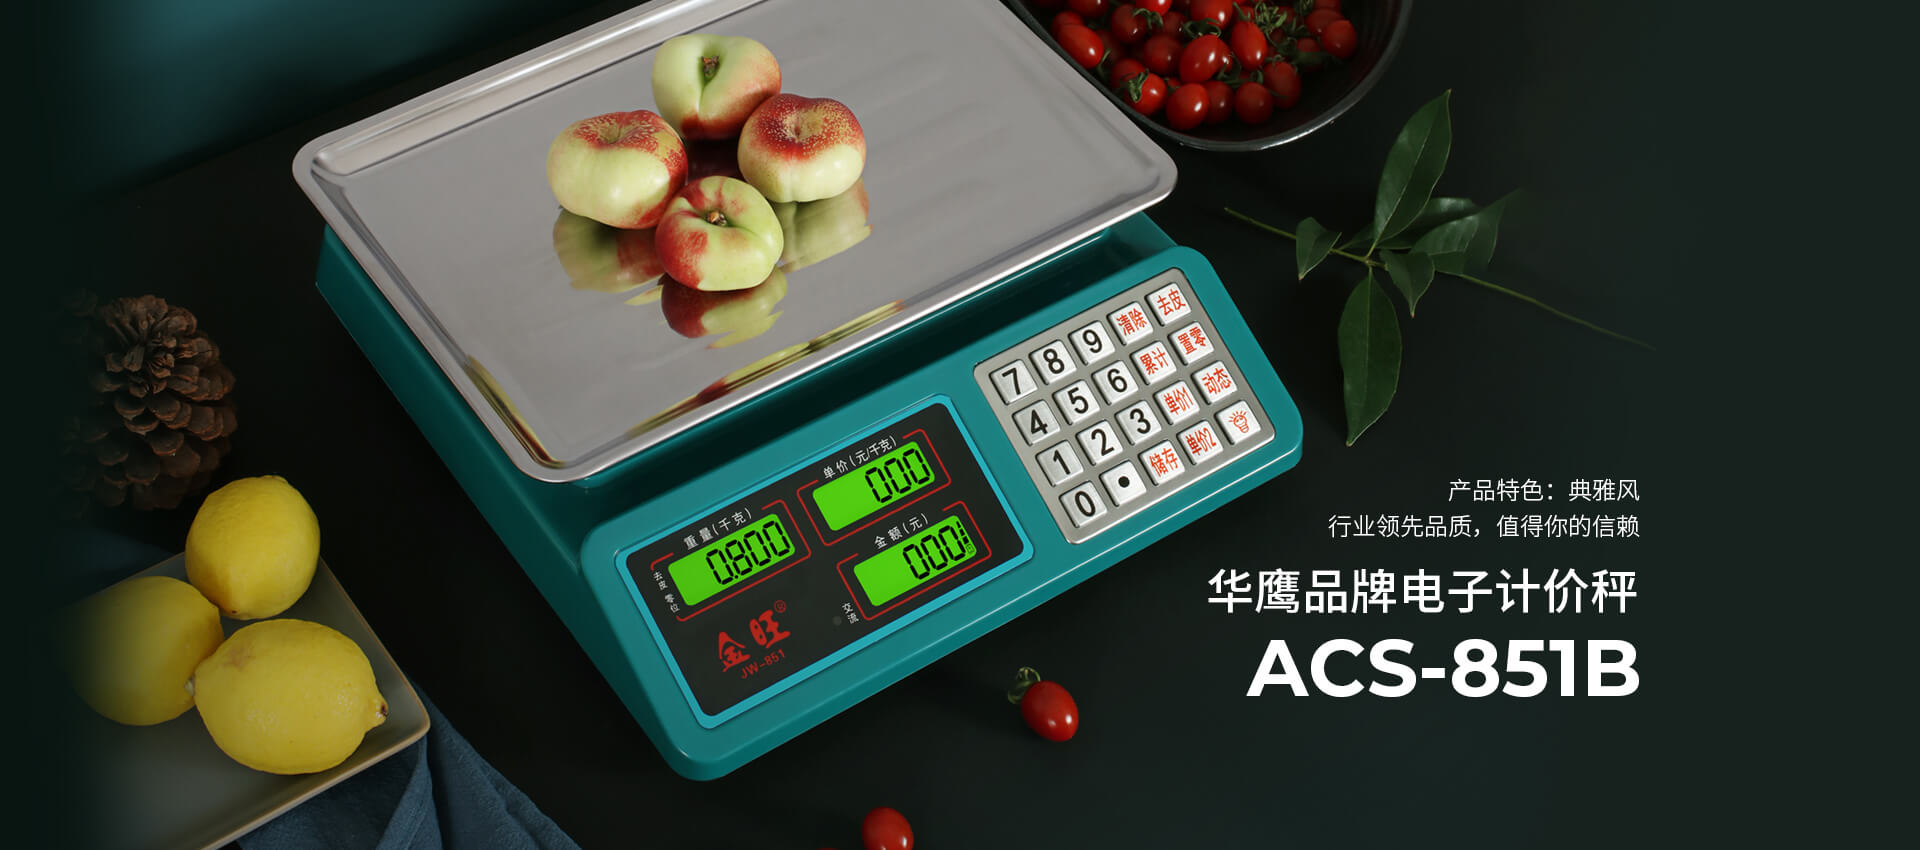 电子计价秤ACS-851B